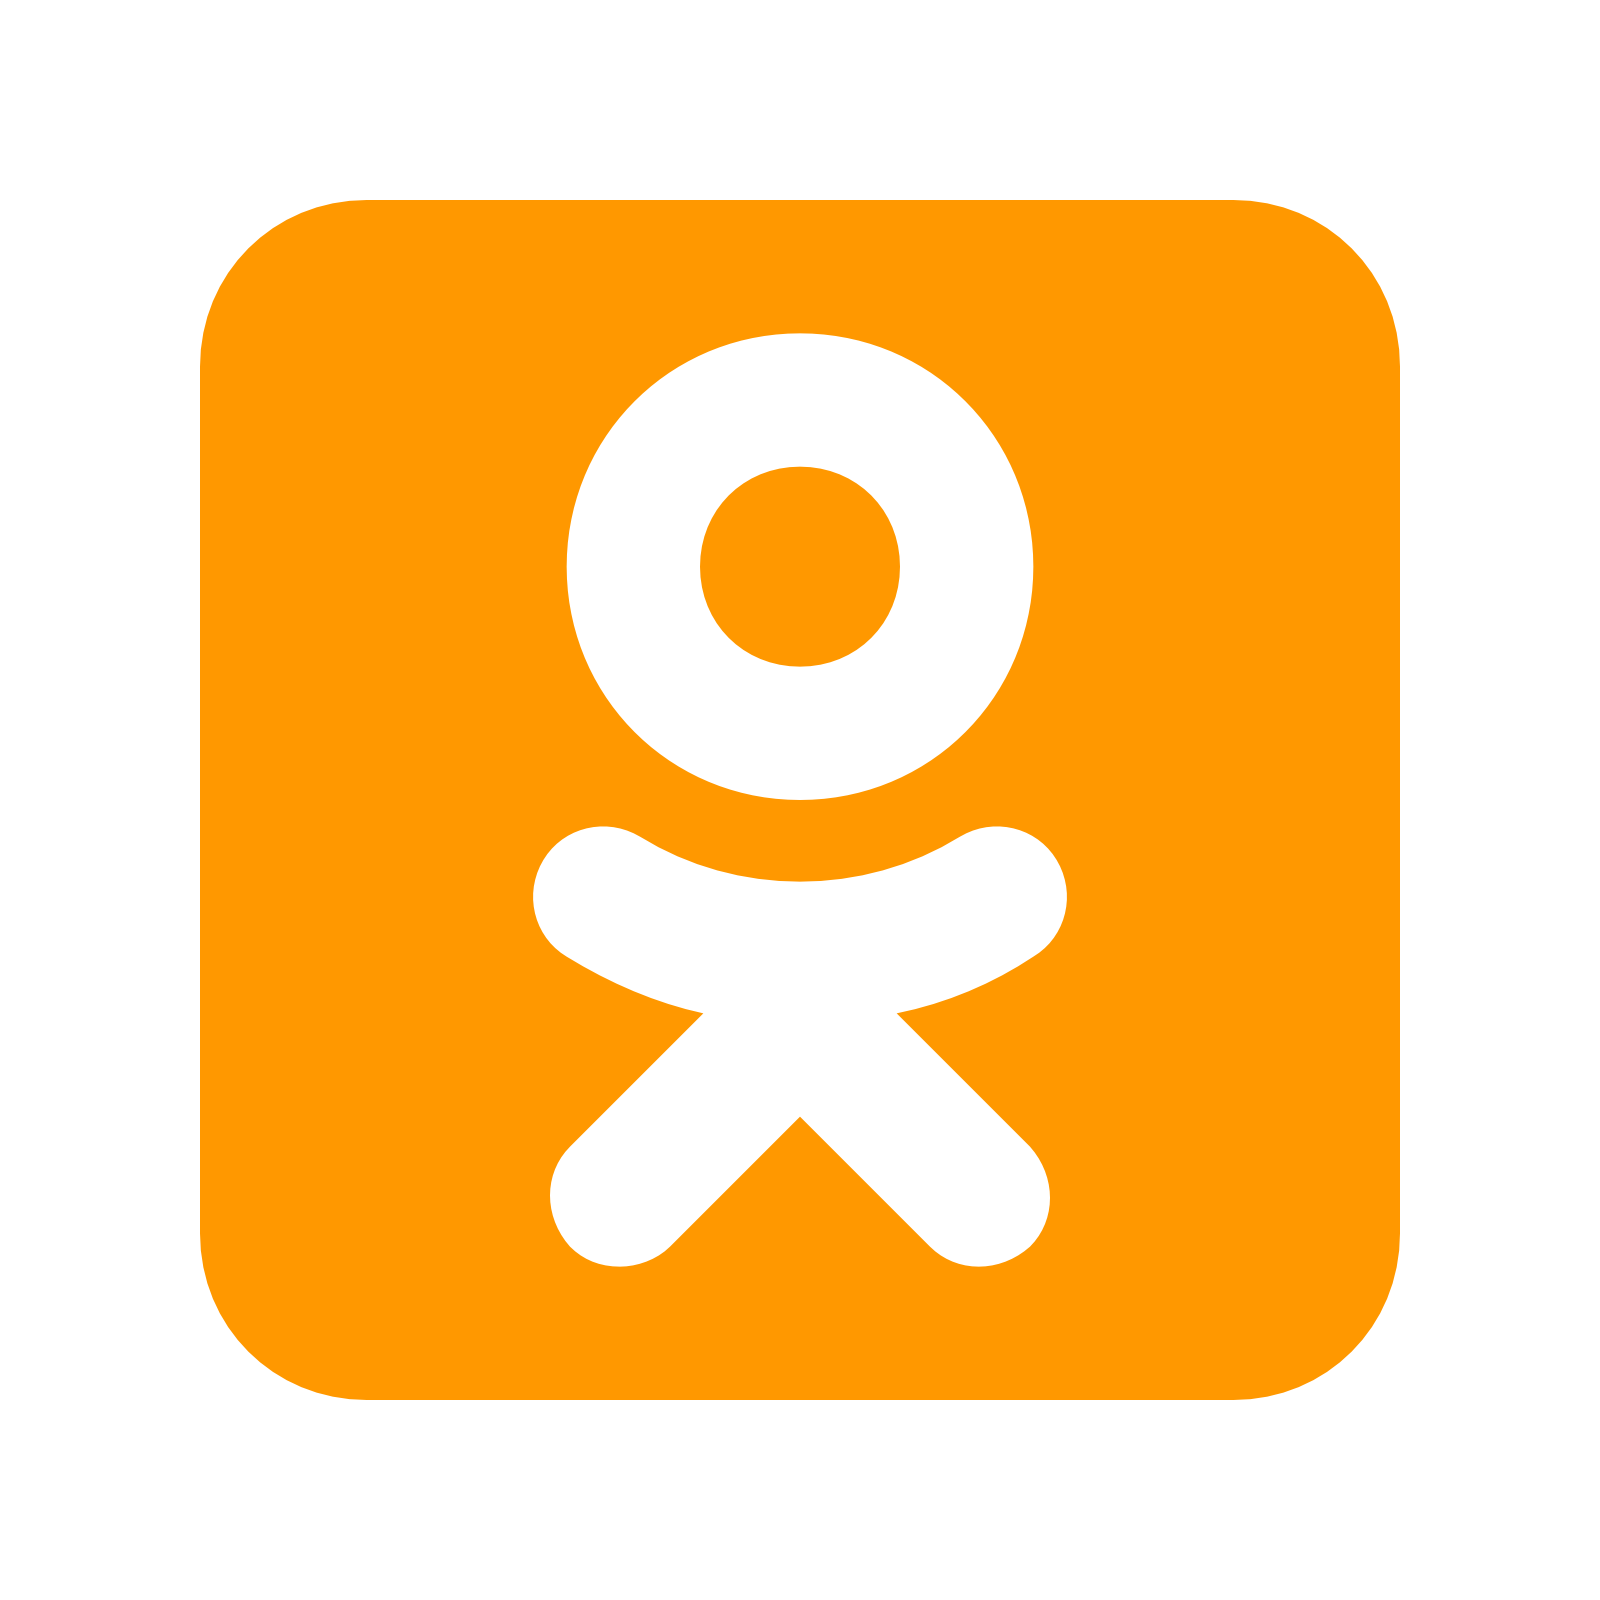 Odnoklassnikiのロゴ